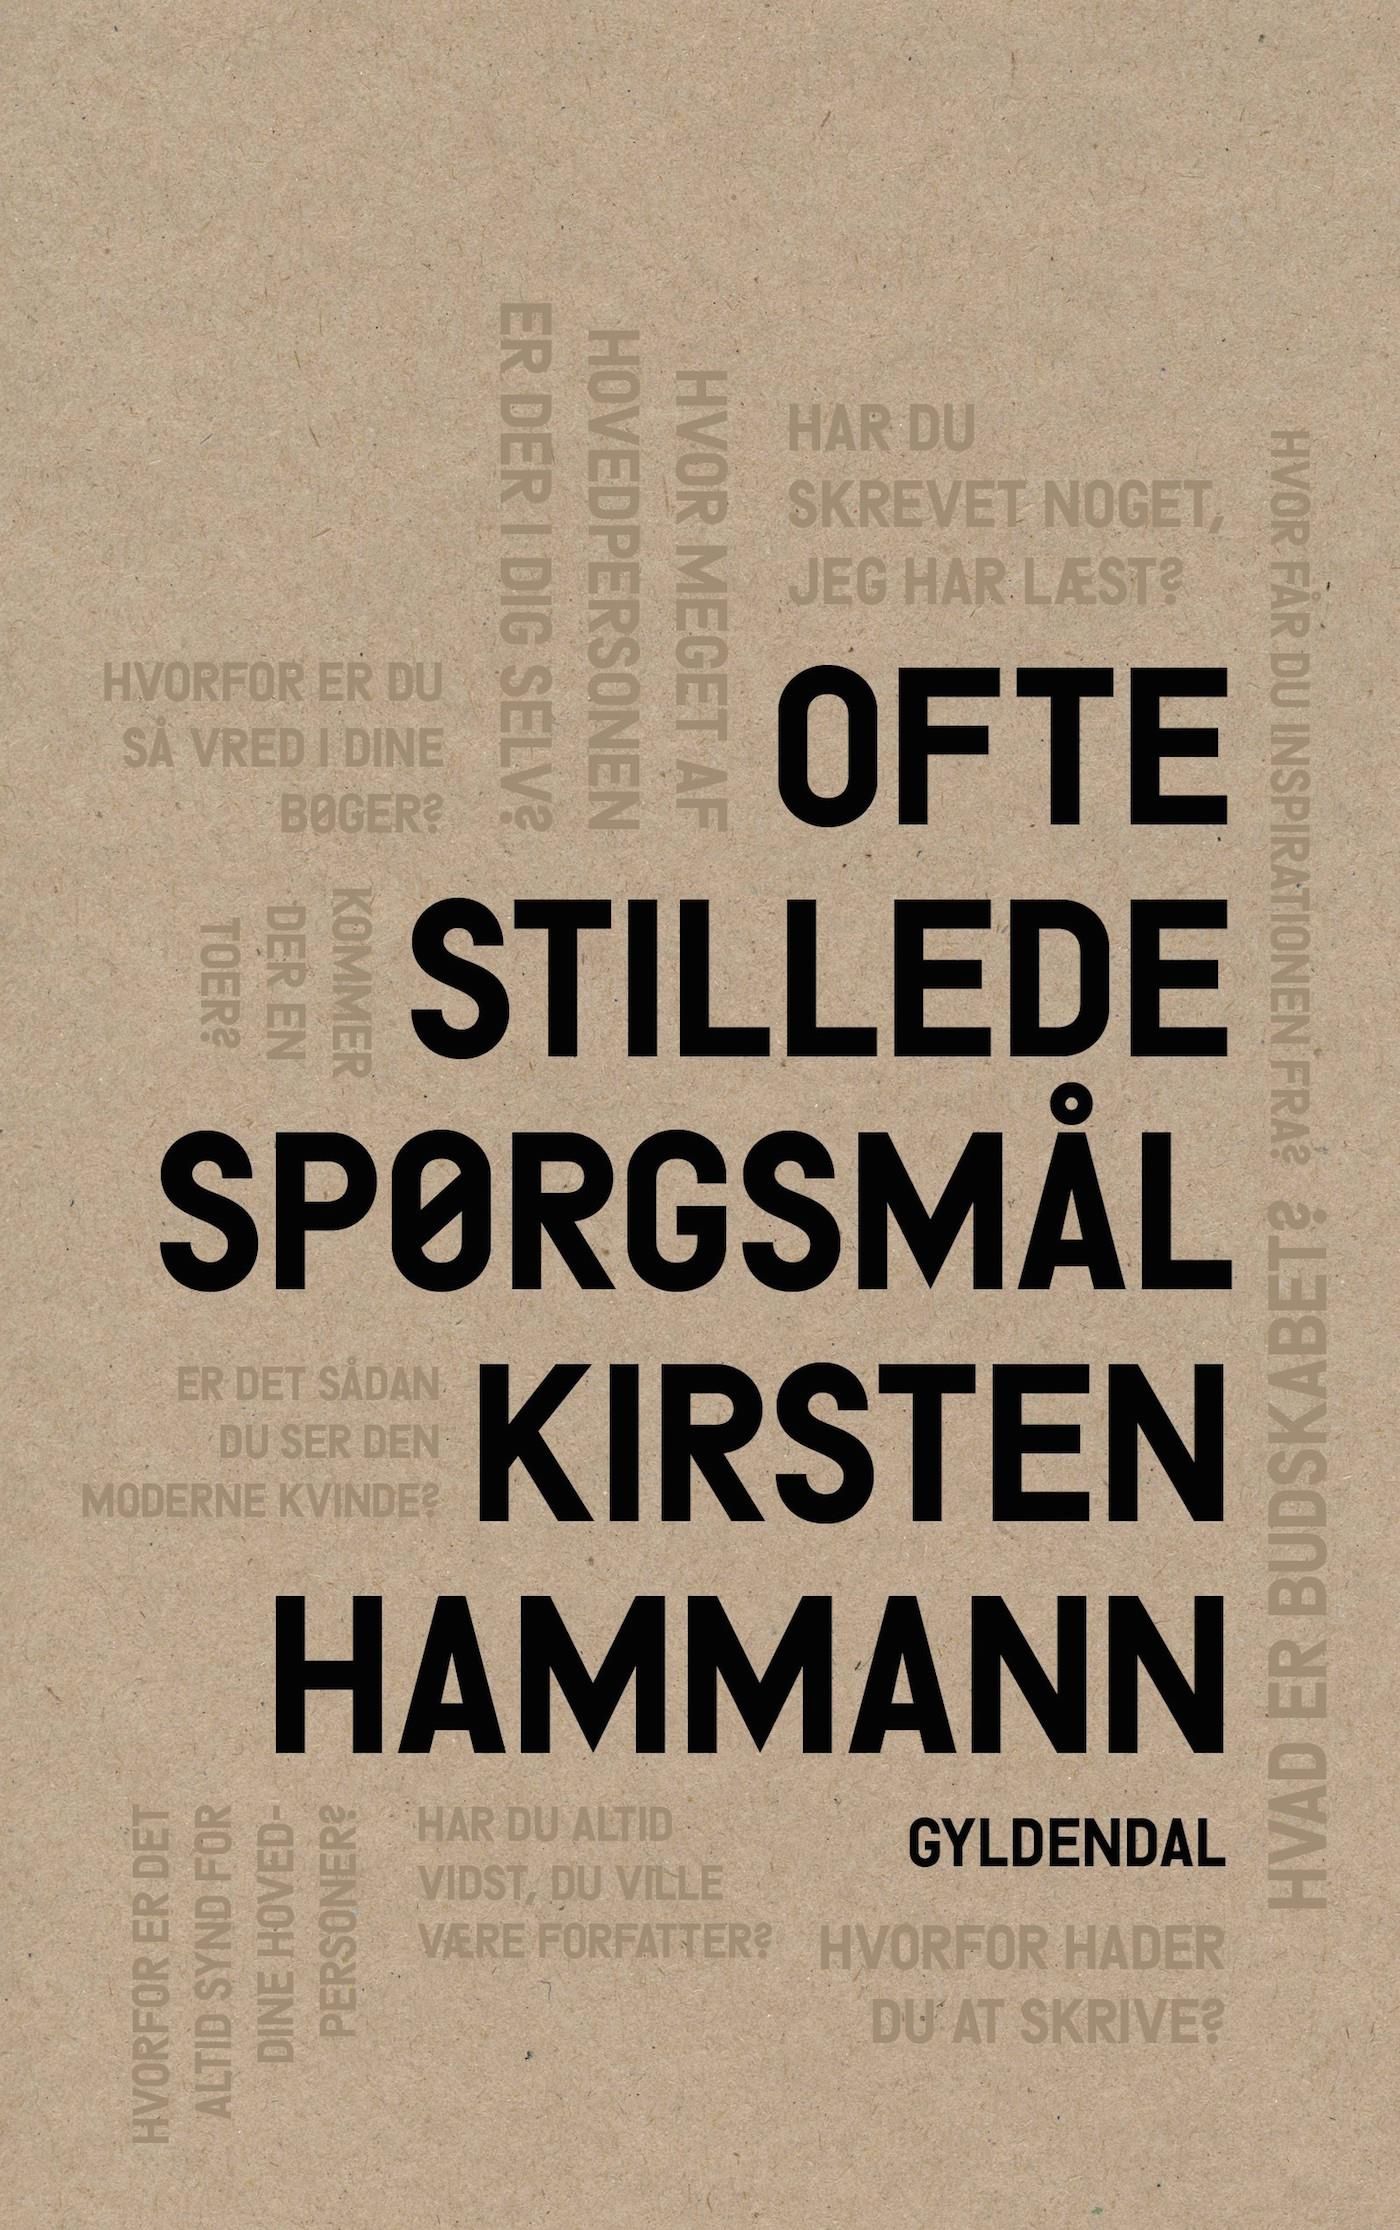 Ofte stillede spørgsmål, e-bok av Kirsten Hammann